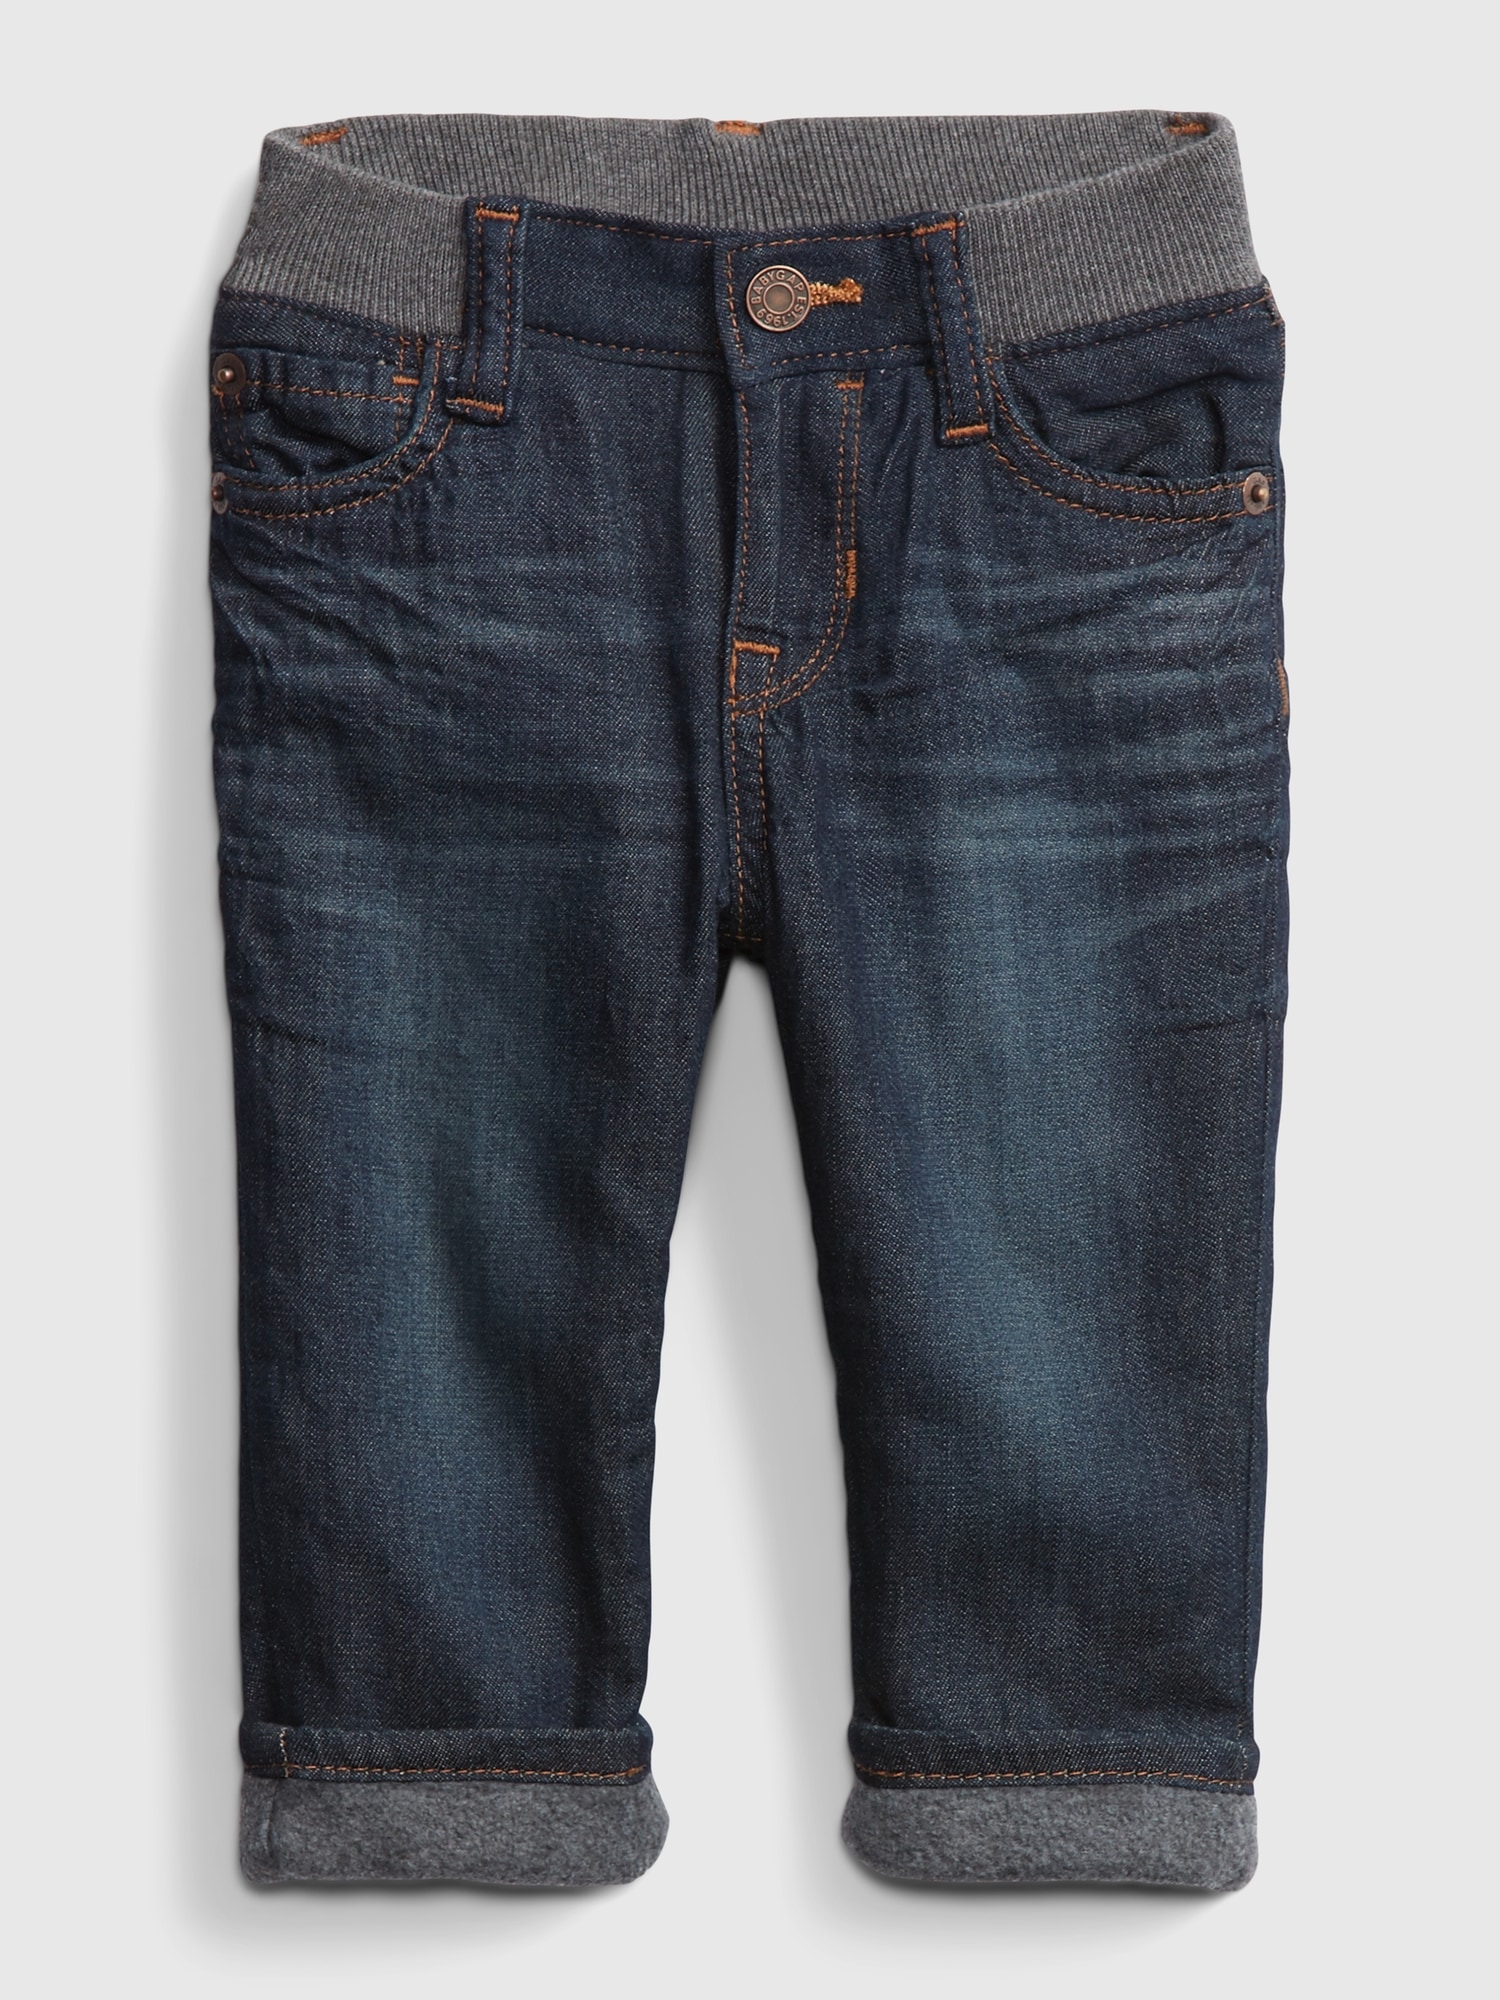 gap fleece lined jeans